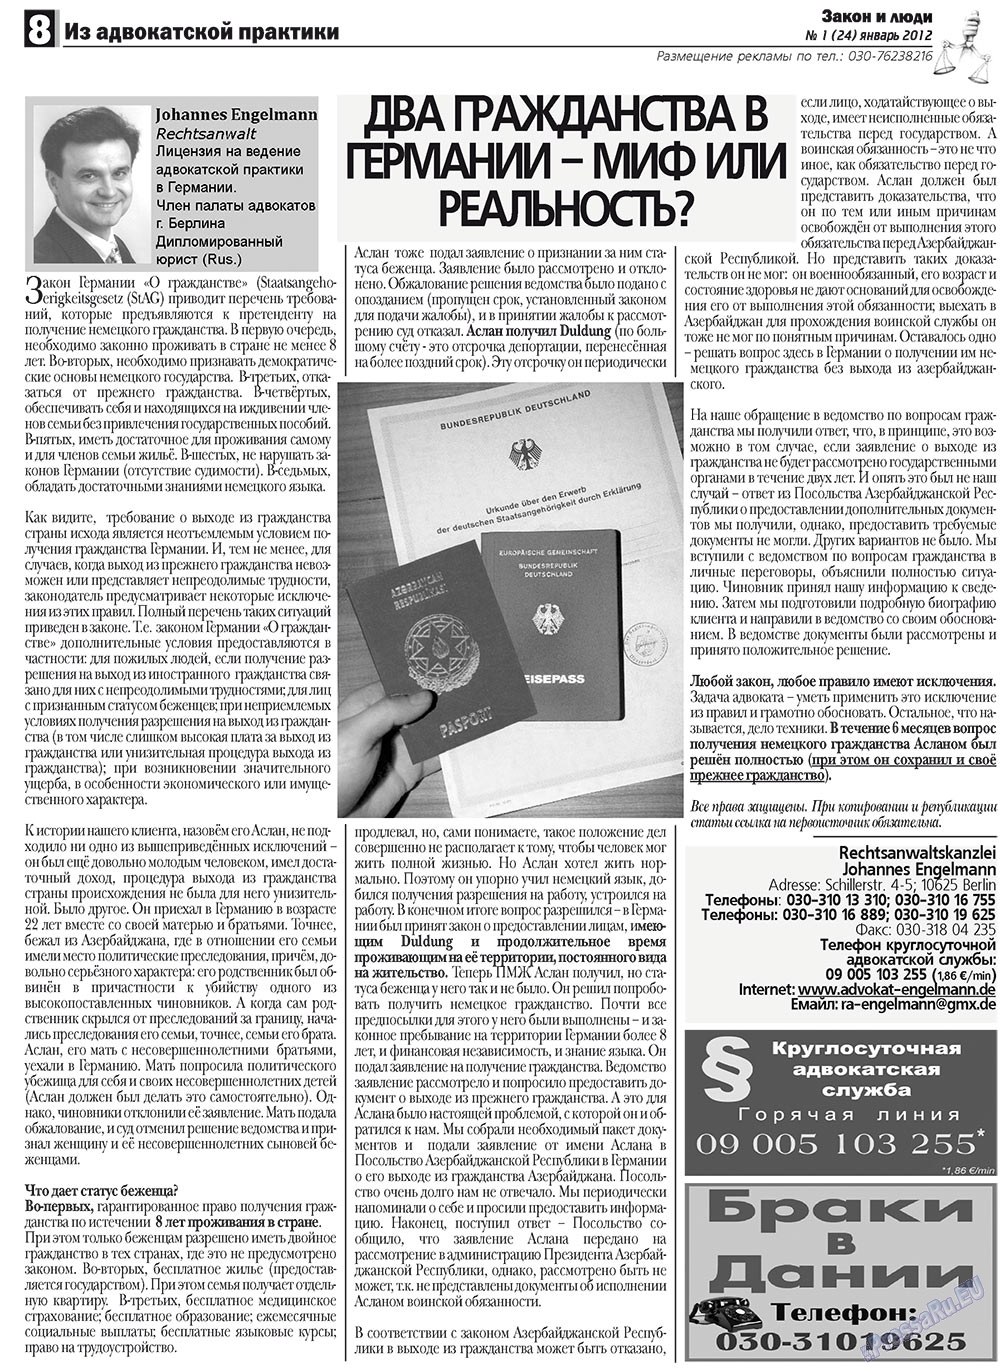 Закон и люди, газета. 2012 №1 стр.8